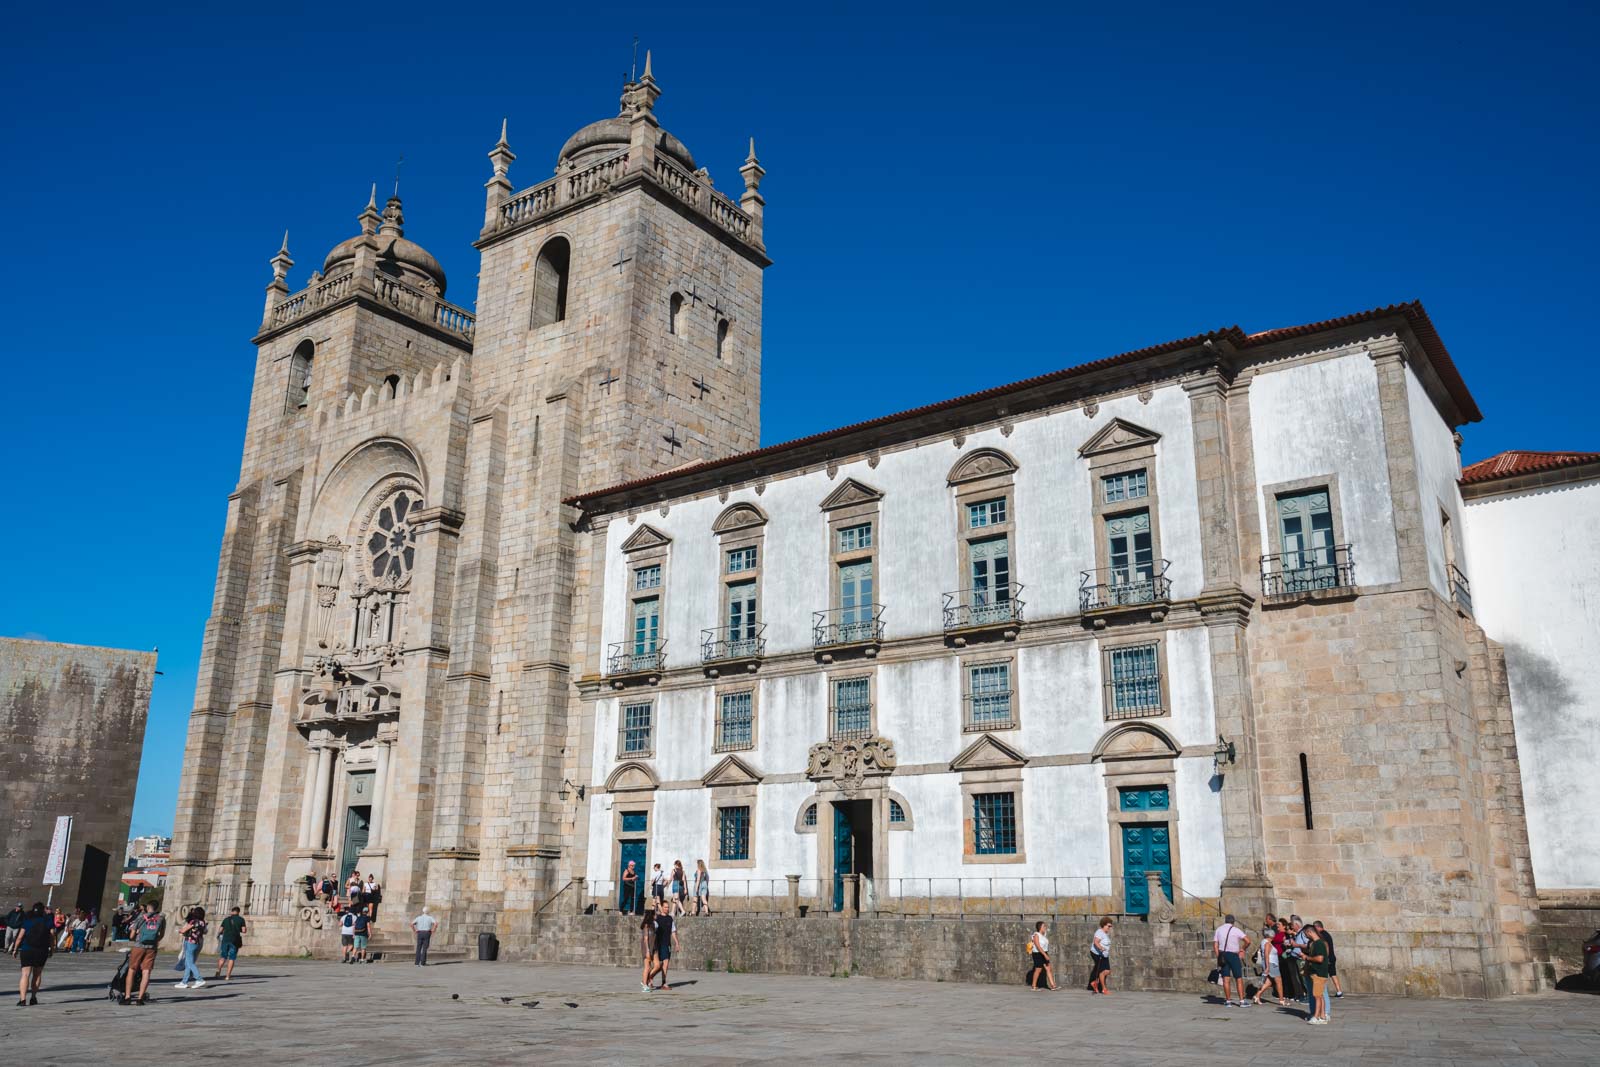 A church in Portugal